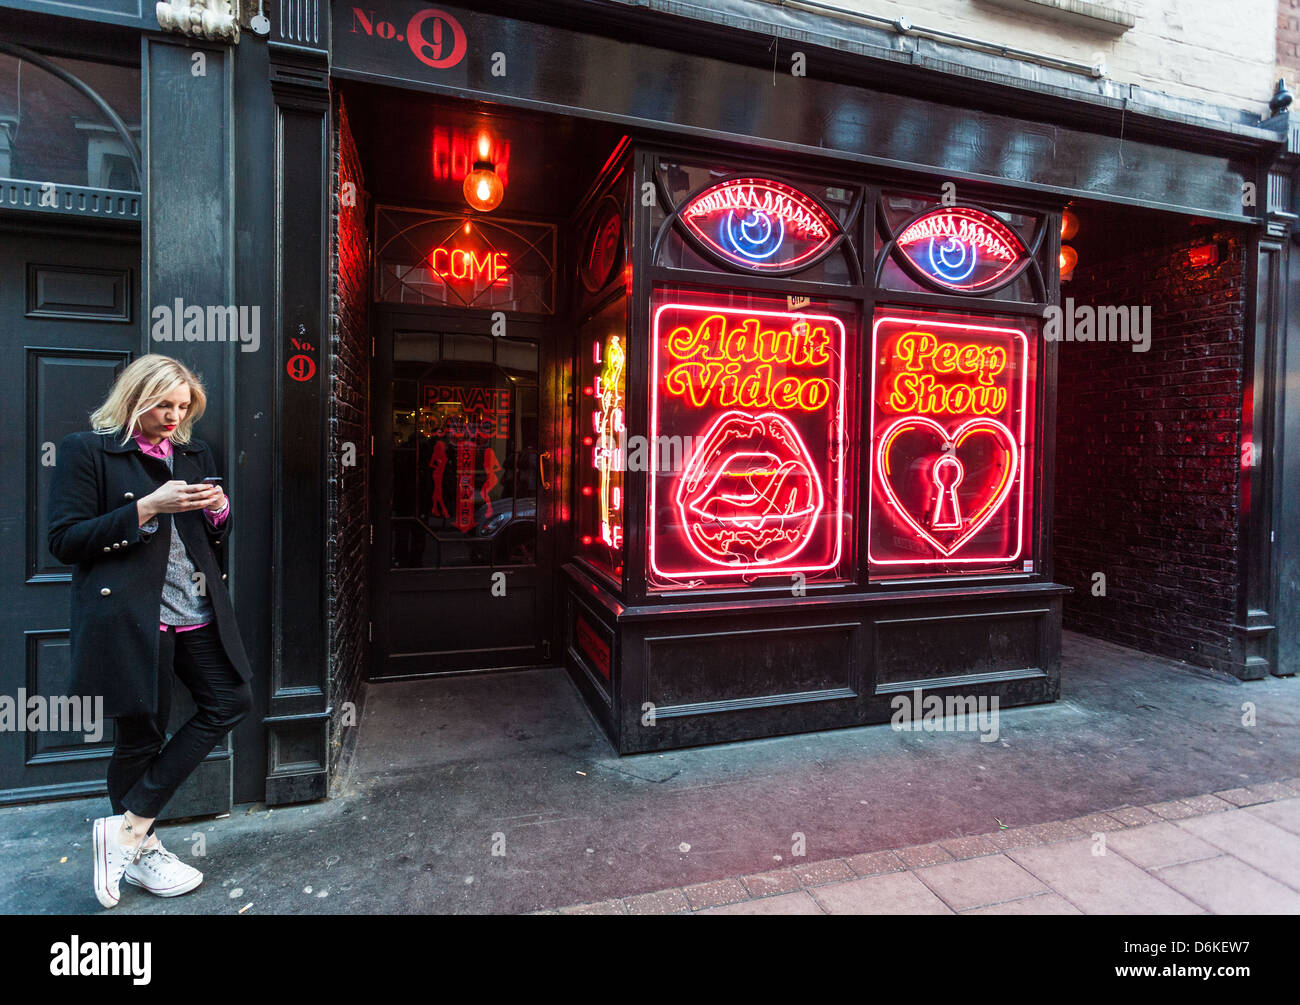 La Bodega Negra Ristorante messicano e bar, ingannevole shopfront, Soho, Londra, Inghilterra, Regno Unito. Foto Stock